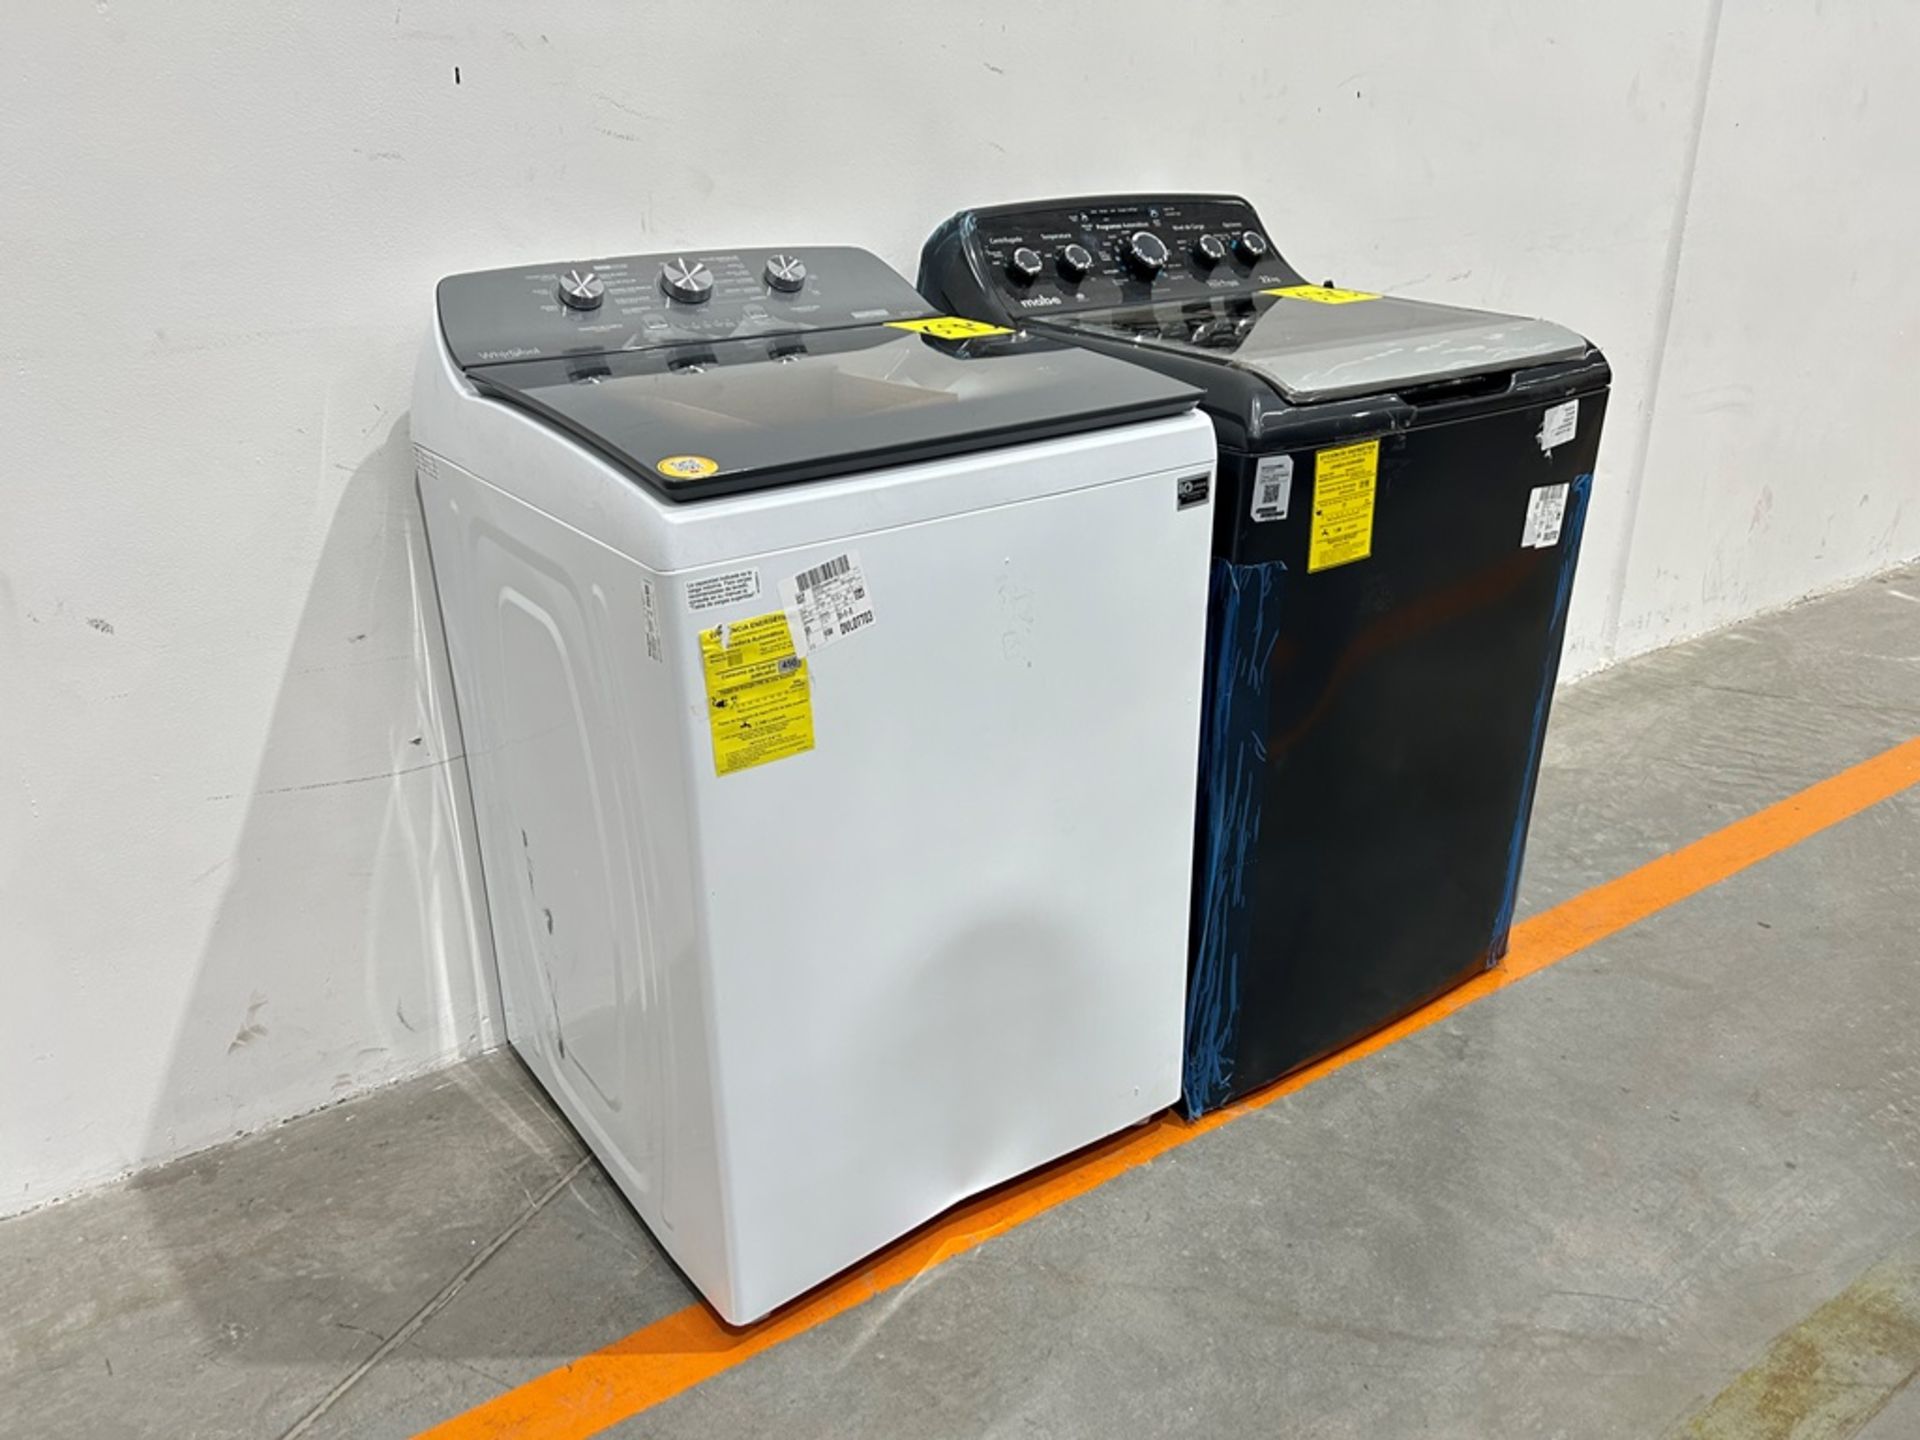 Lote de 2 lavadoras contiene: 1 Lavadora de 22 KG Marca MABE, Modelo LMA72215WDAB00, Serie S23162, - Image 2 of 10